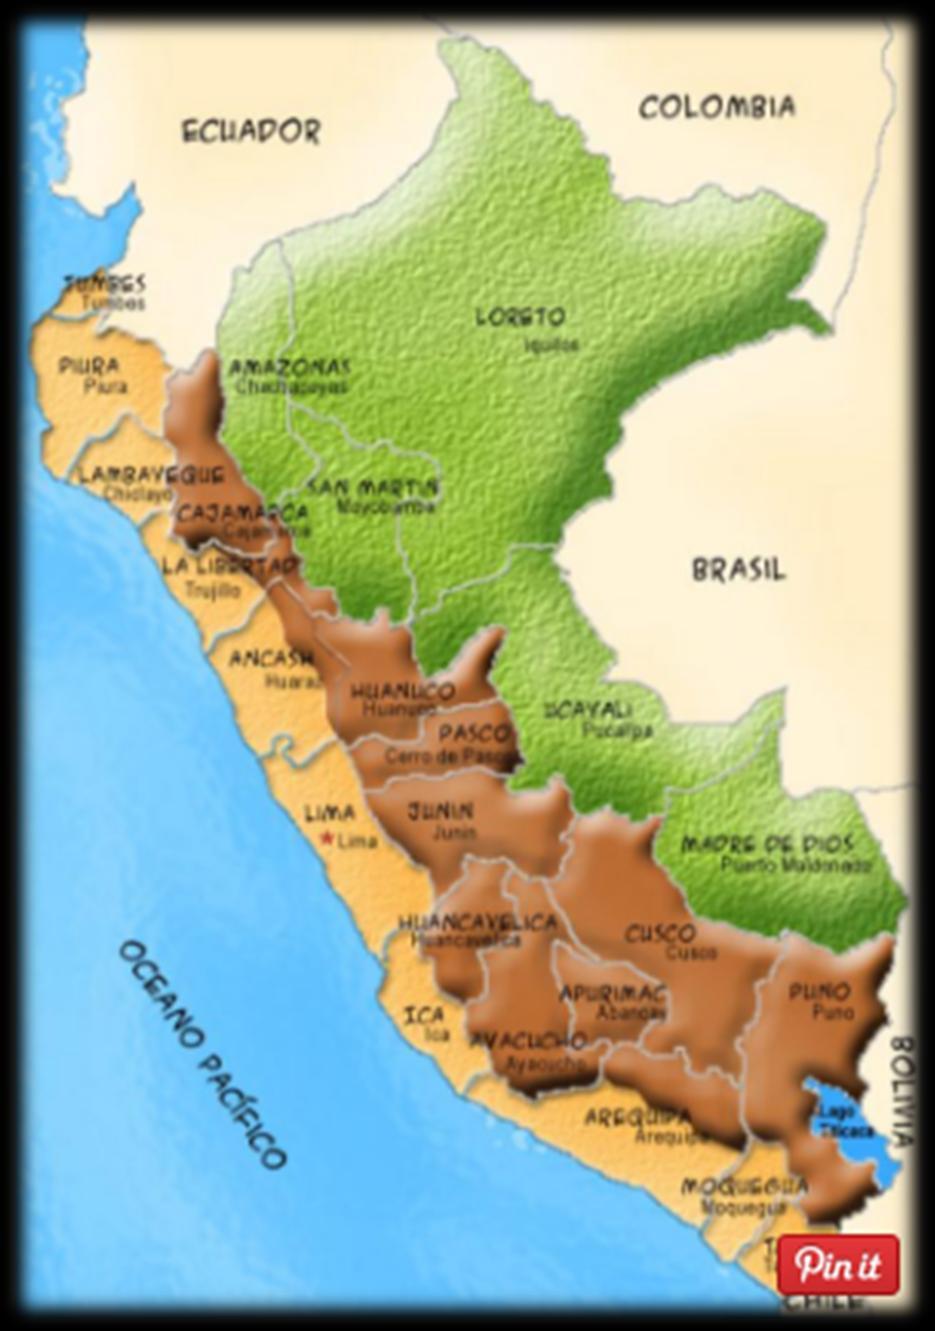 I INTRODUCCION: Extensión El Perú está situado en la parte occidental de América del Sur. Limita al norte con Ecuador y Colombia, al este con Brasil, al sureste con Bolivia, al sur con Chile.